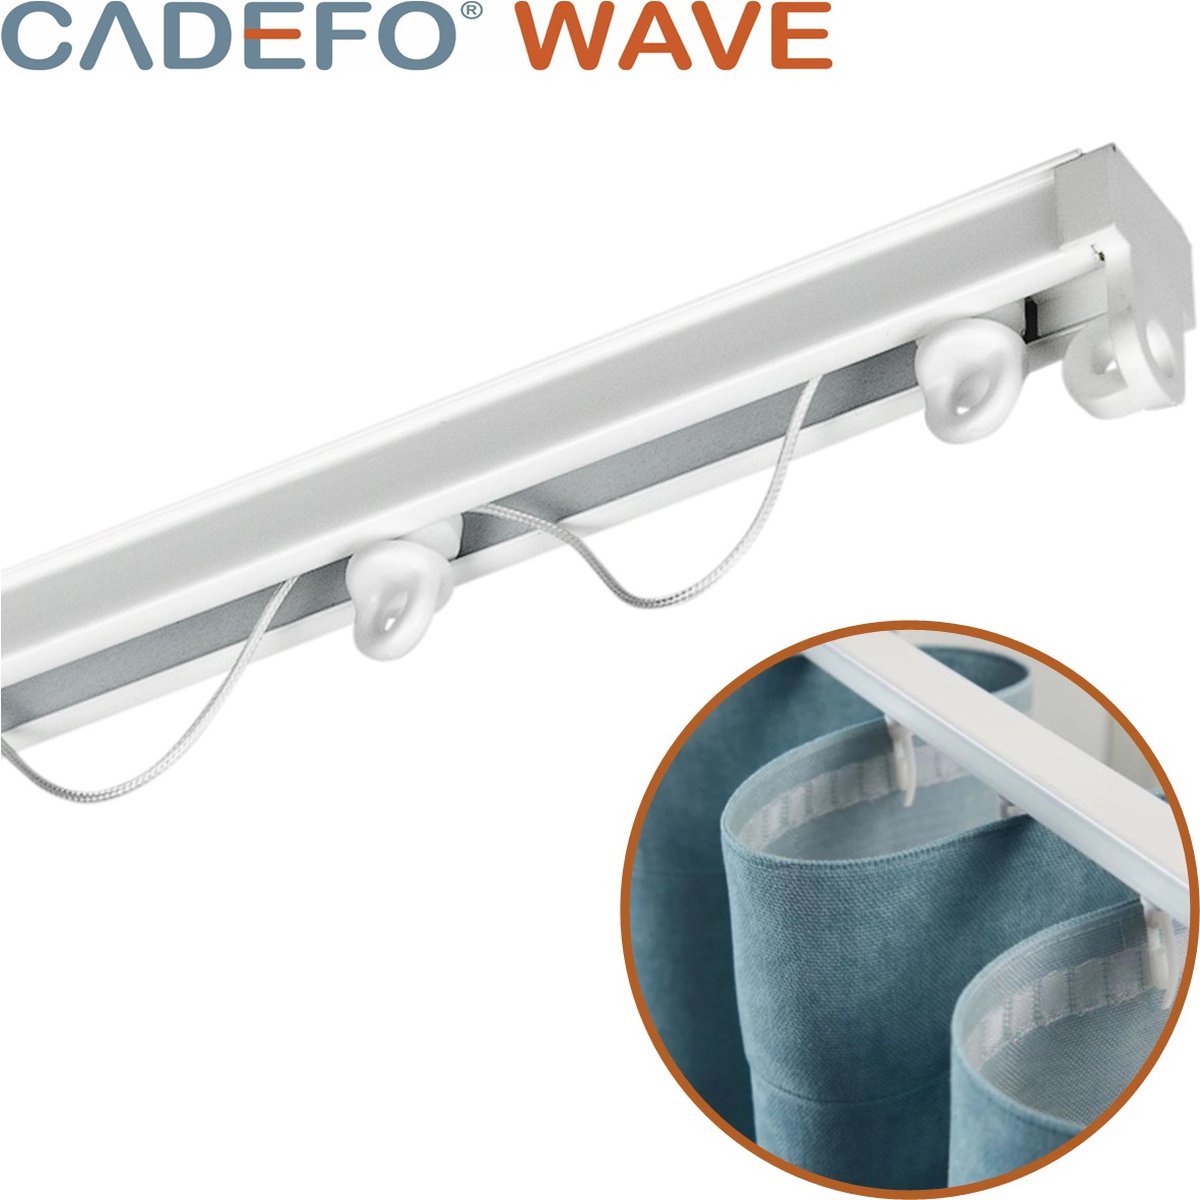 CADEFO WAVE (301 - 350 cm) Gordijnrails - Compleet op maat! - UIT 1 STUK - Leverbaar tot 6 meter - Plafondbevestiging - Lengte 317 cm